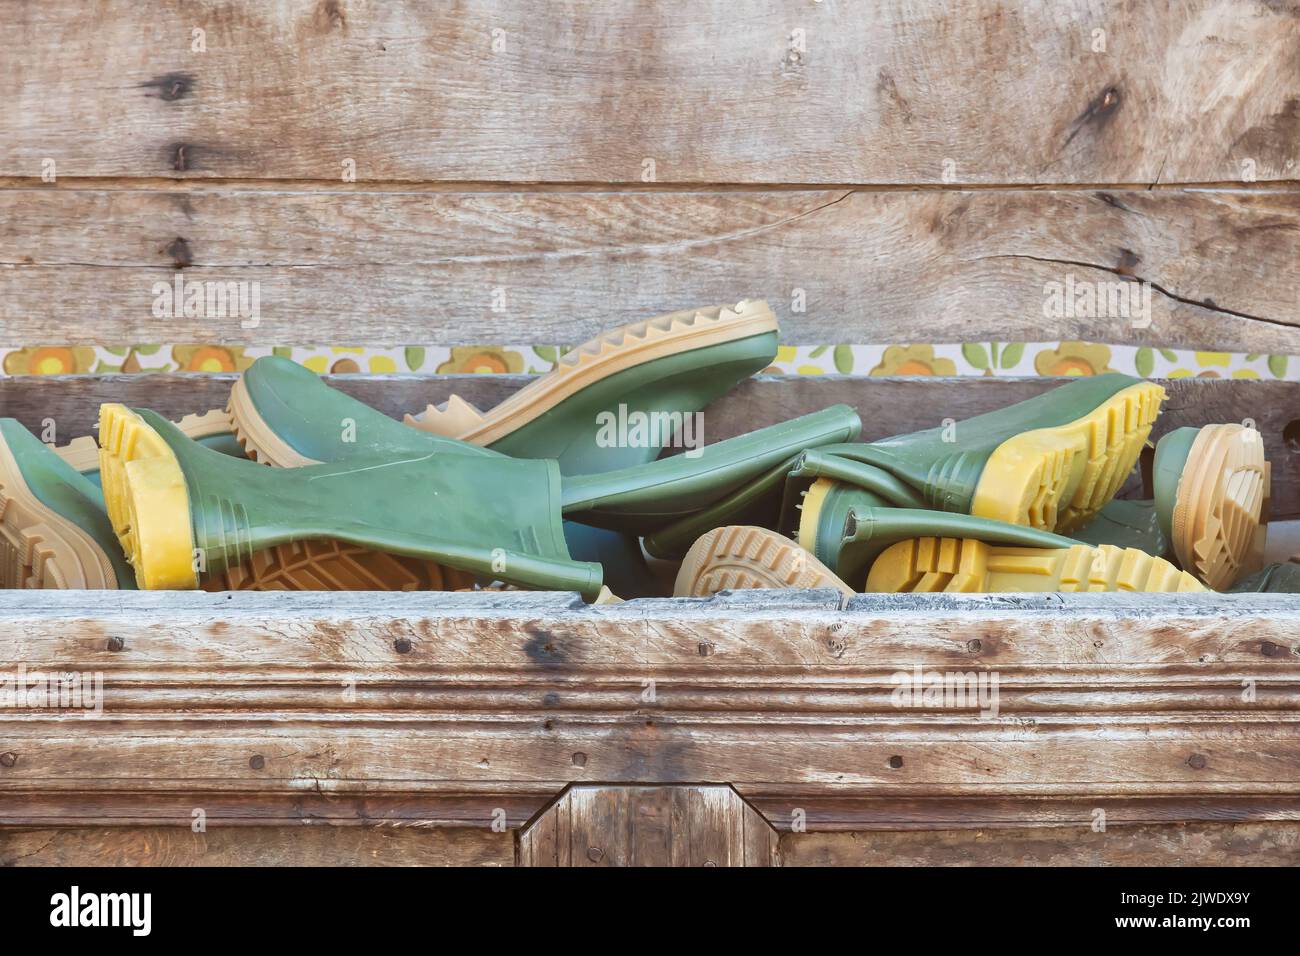 Holzkiste gefüllt mit neuen grünen Gummi-Regenstiefeln Stockfoto